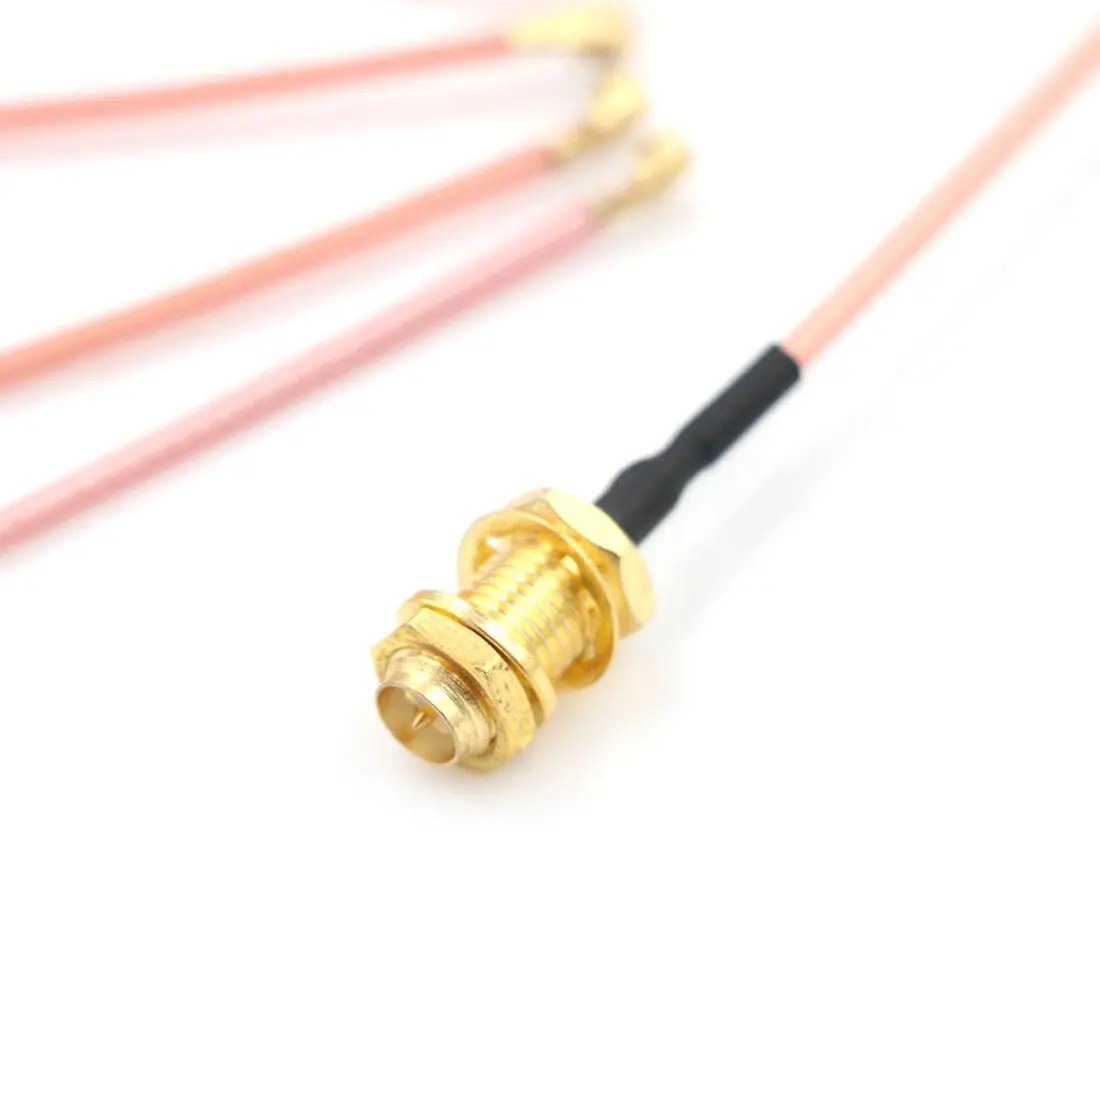 5 шт. кабель разъема SMA женский к uFL/u. FL/IPX/ipex РЧ или без разъема коаксиальный адаптер в сборе RG178 косичка кабель 1,13 мм